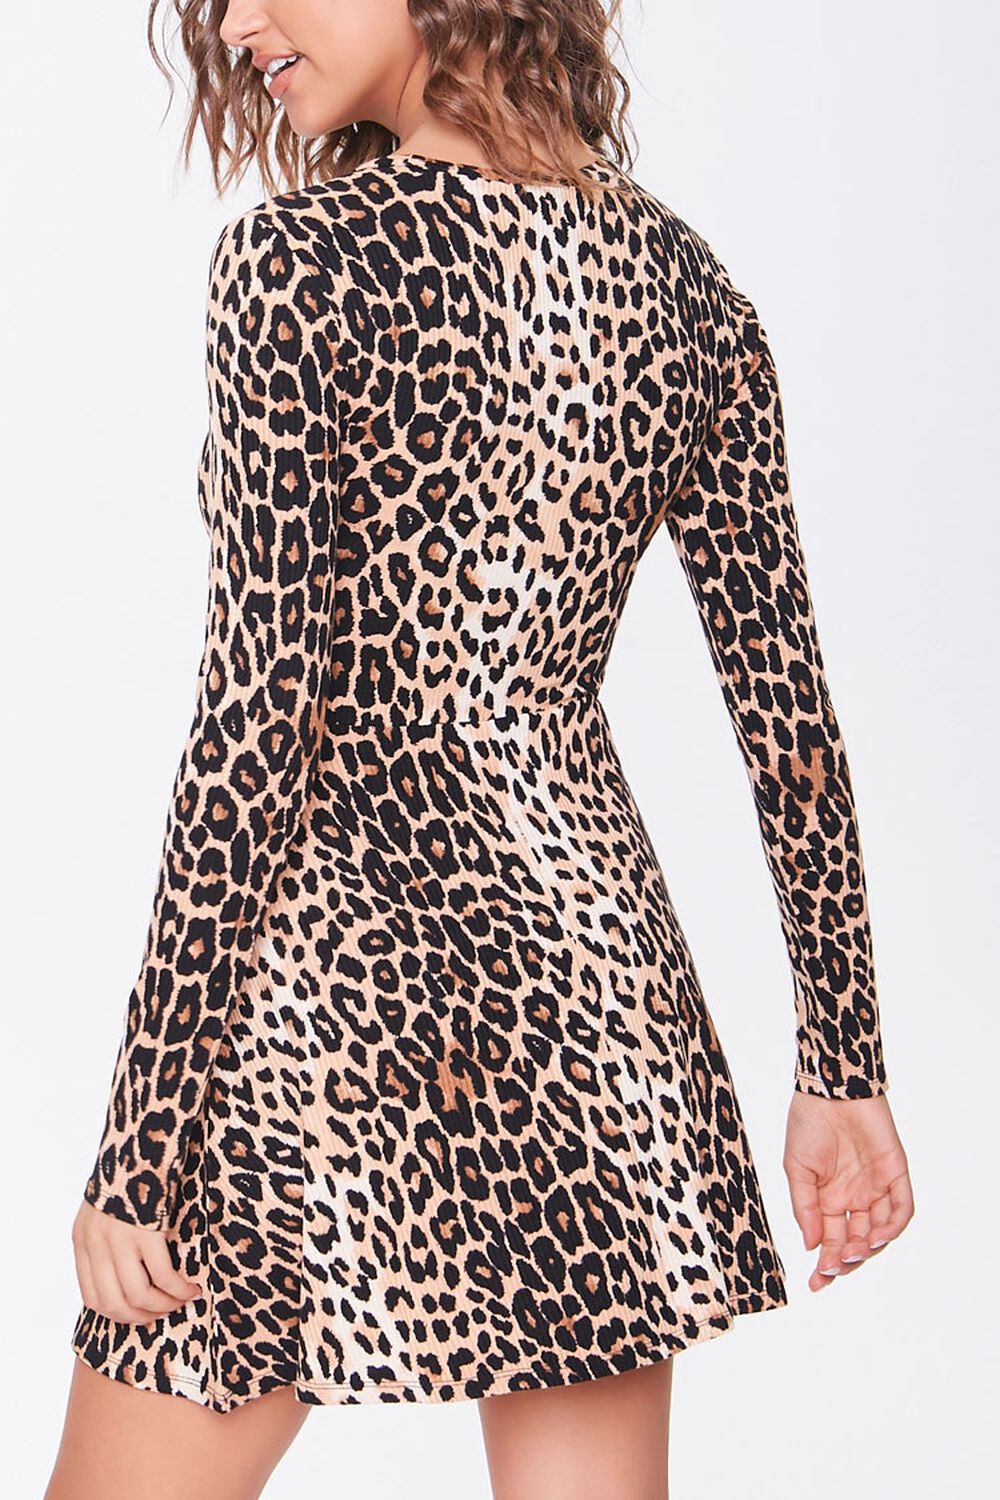 Leopard Print Skater Dress, image 3